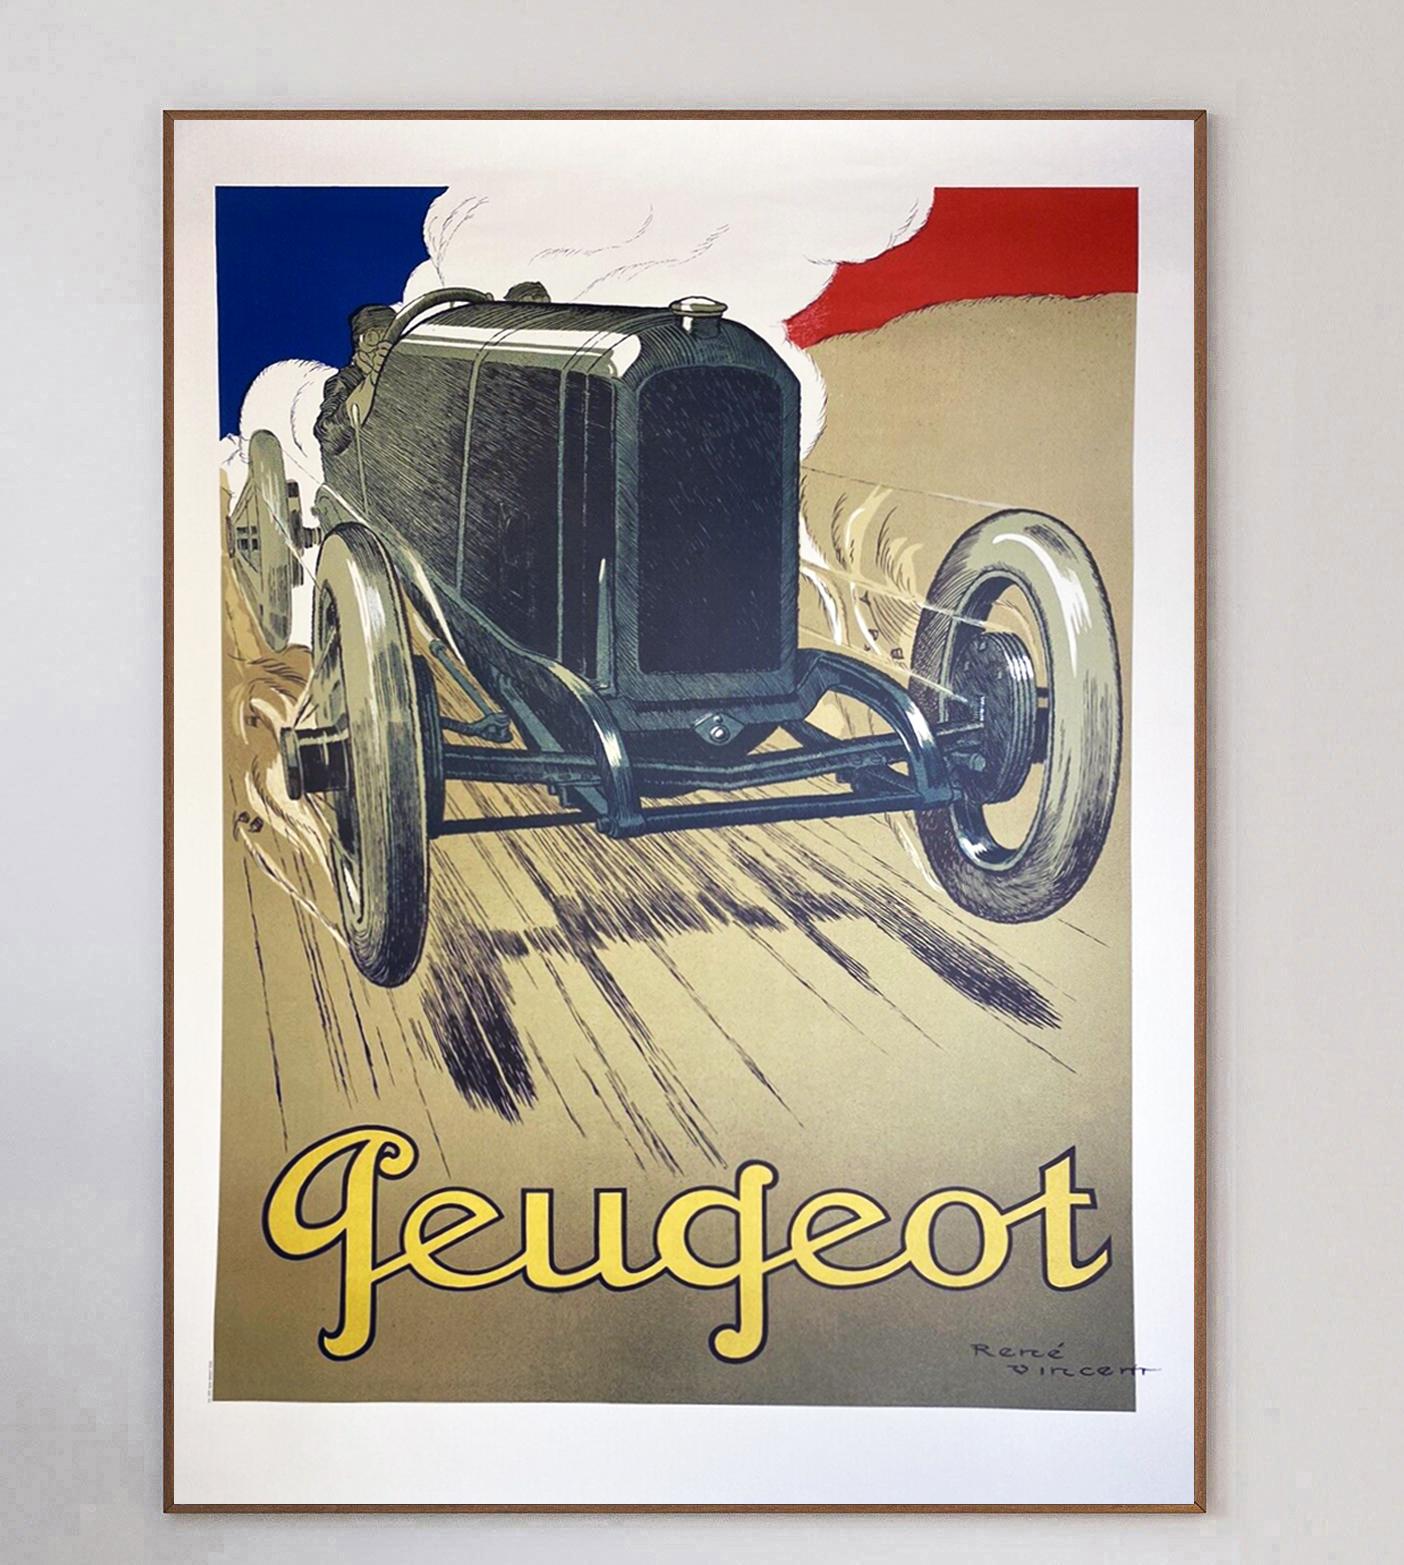 Schönes lithografiertes Plakat aus dem Jahr 1919. Dieses von dem großen Plakatkünstler Rene Vincent entworfene Plakat wirbt für Peugeot-Autos und zeigt ein Modell aus dem frühen 20. Jahrhundert, das eine Straße entlangfährt. Der Rauch des Wagens